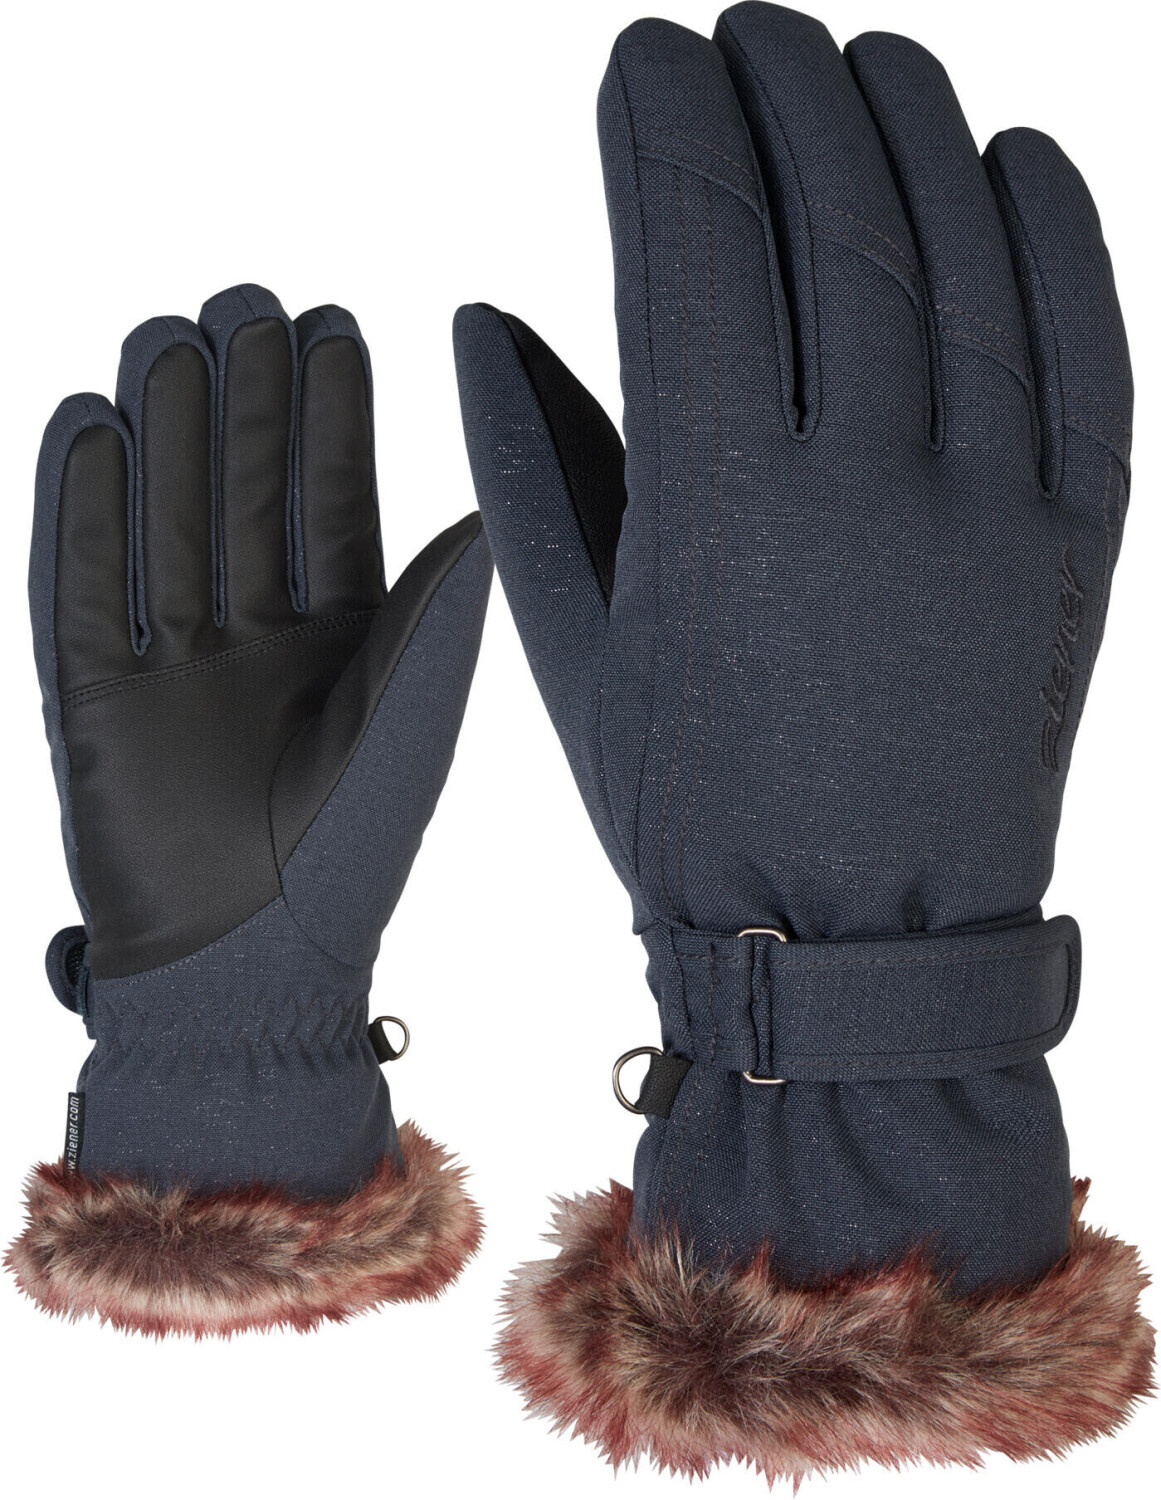 Ziener KIM Women Glove (801117) gray ink spark ab 36,99 € | Preisvergleich  bei